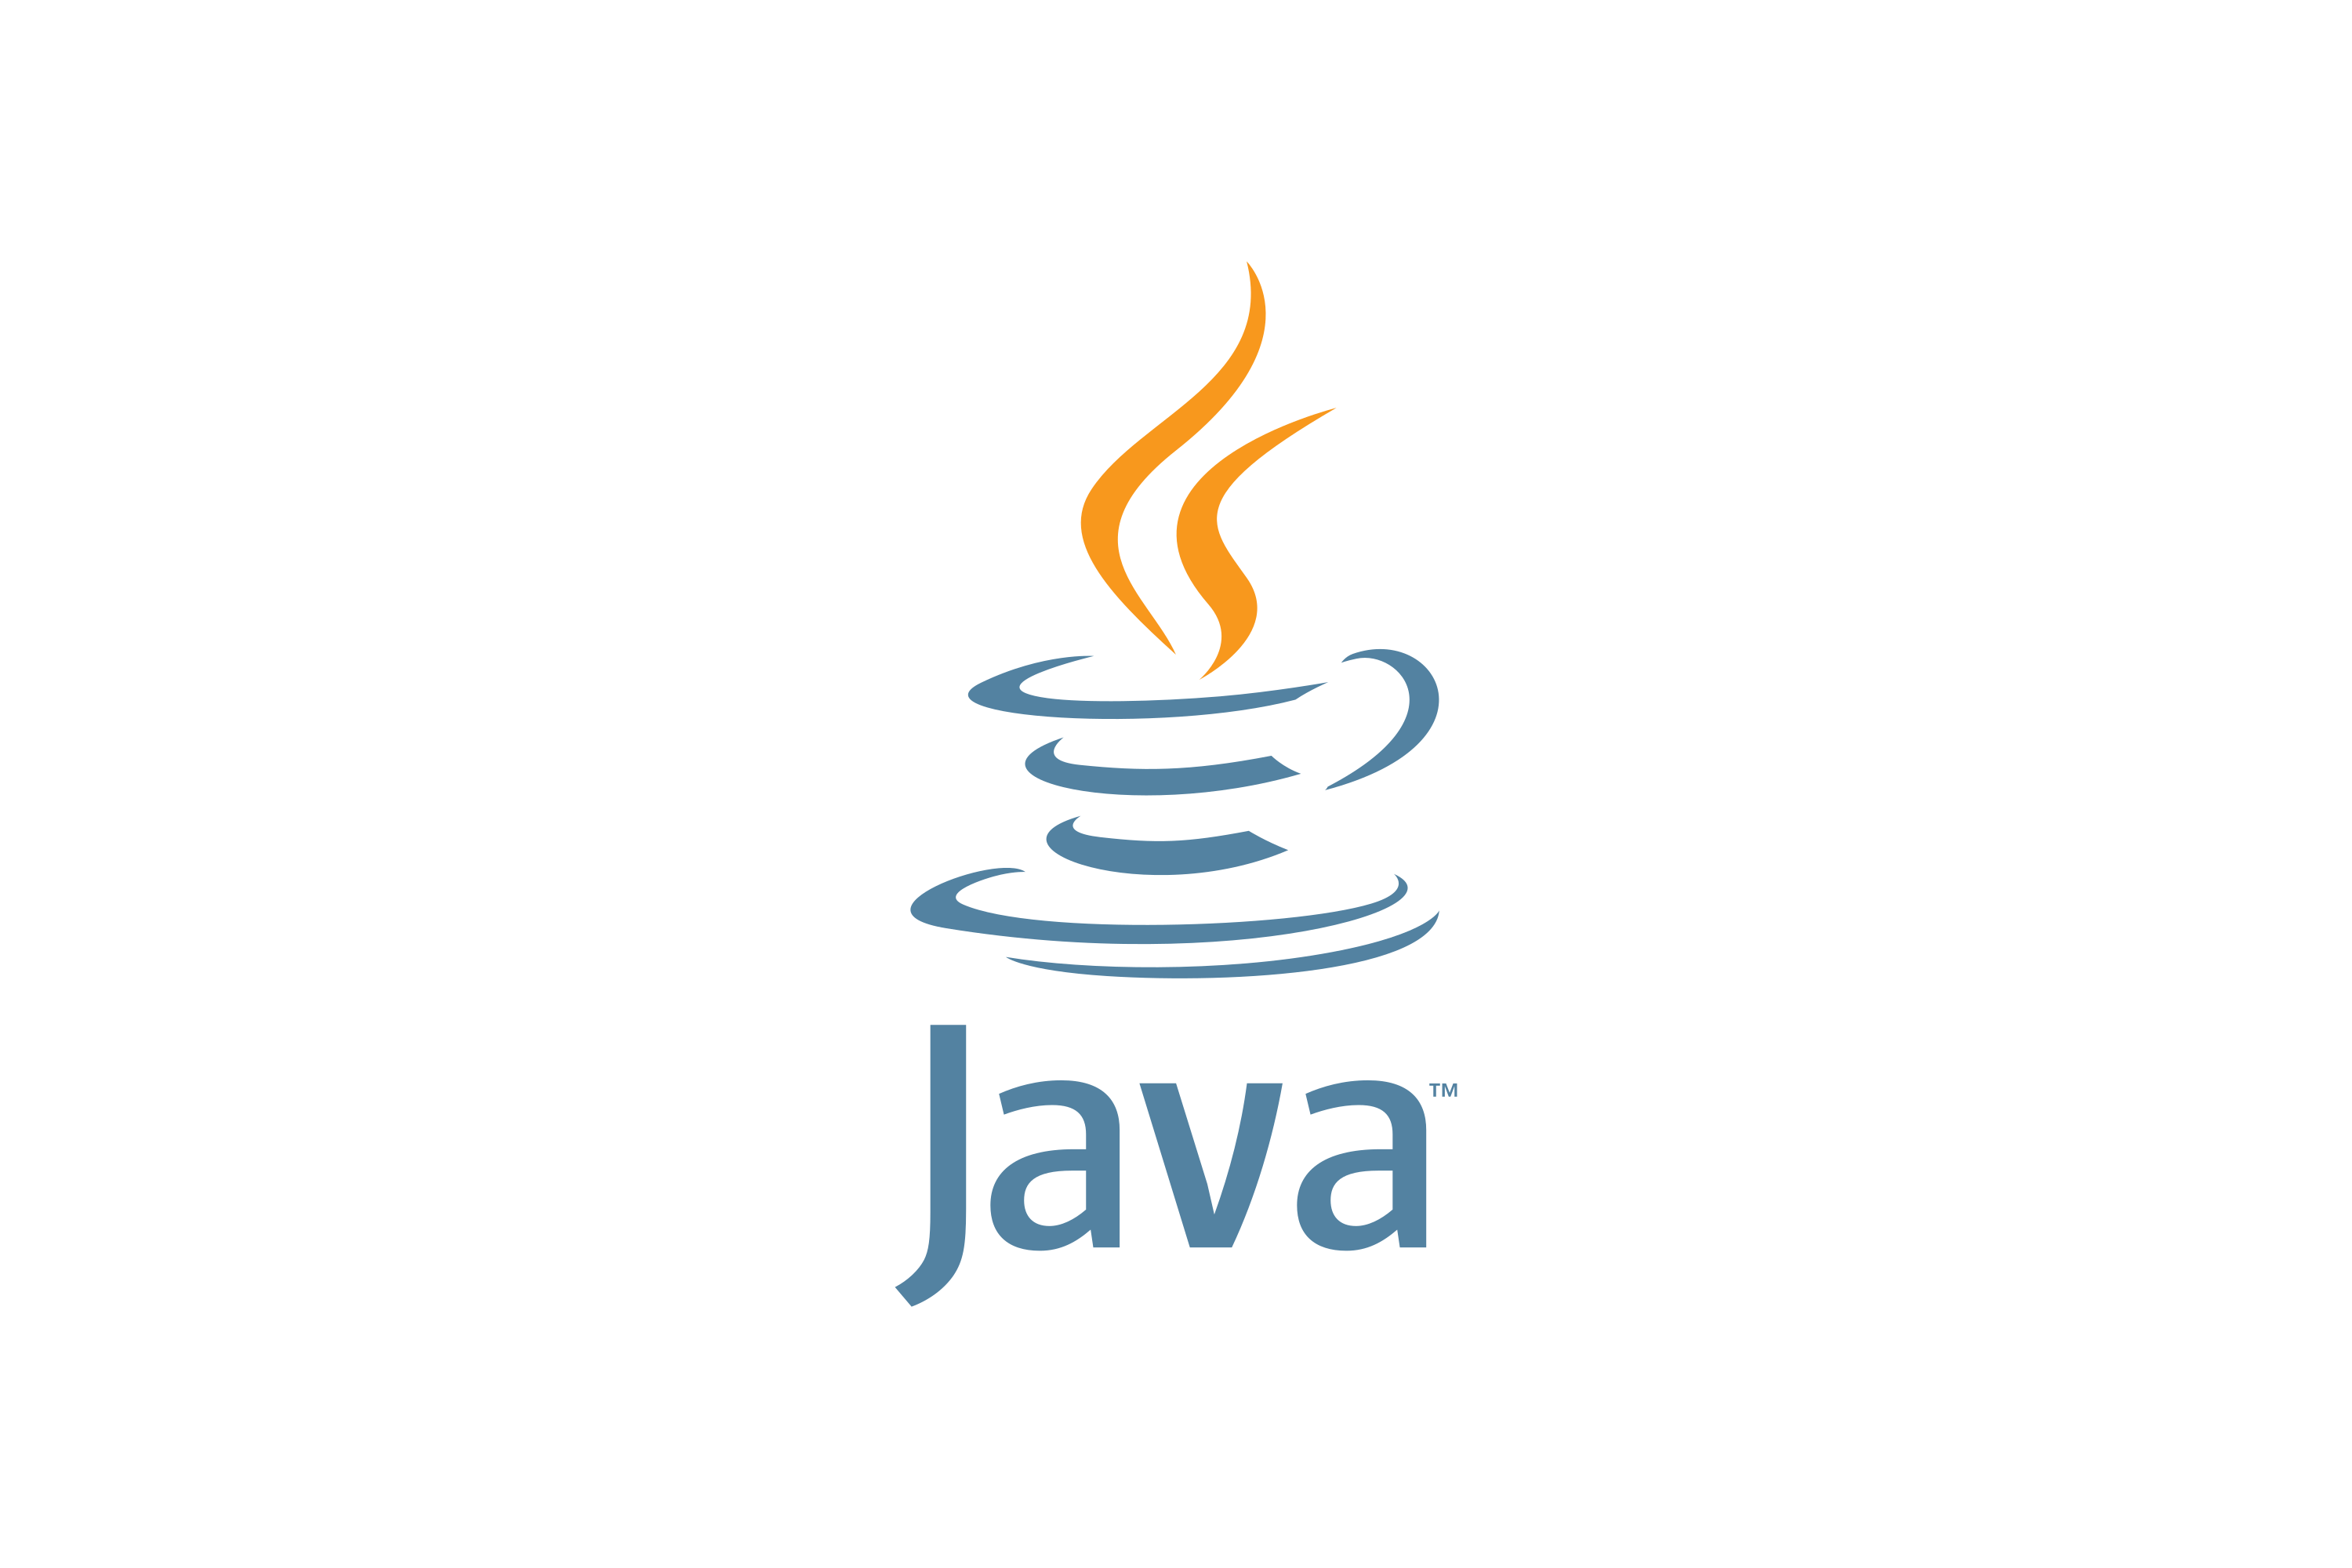 Jvaязык программирования логотип. Иконка java. Java логотип. Джава язык программирования логотип. Картинка java